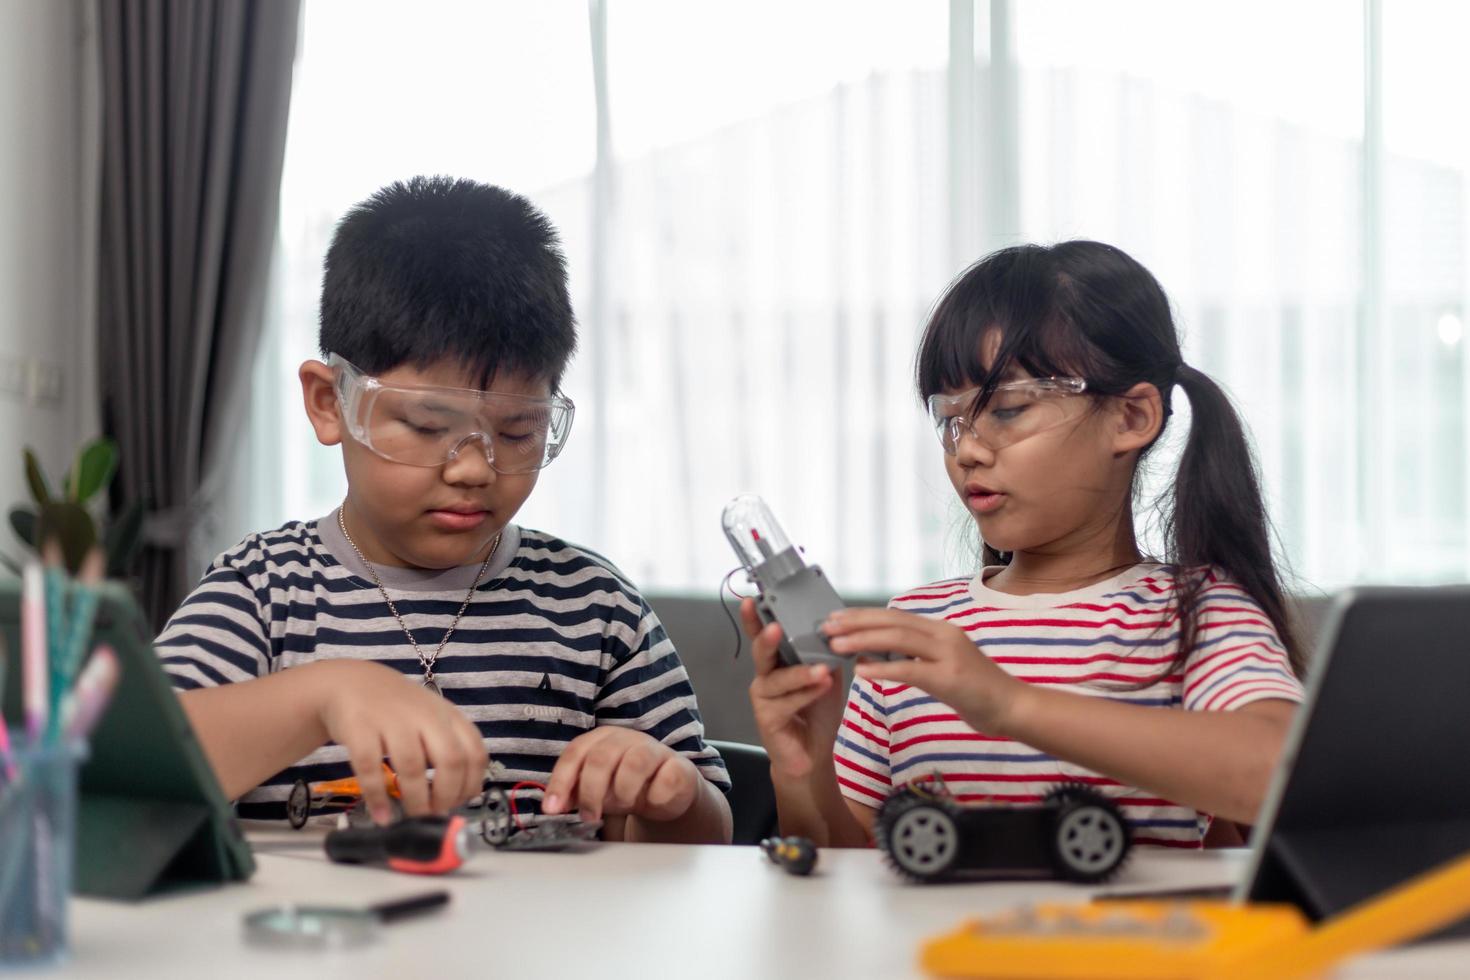 duas crianças asiáticas se divertindo aprendendo codificação juntas, aprendendo remotamente em casa, ciência da haste, educação escolar em casa, distanciamento social divertido, isolamento, novo conceito normal foto